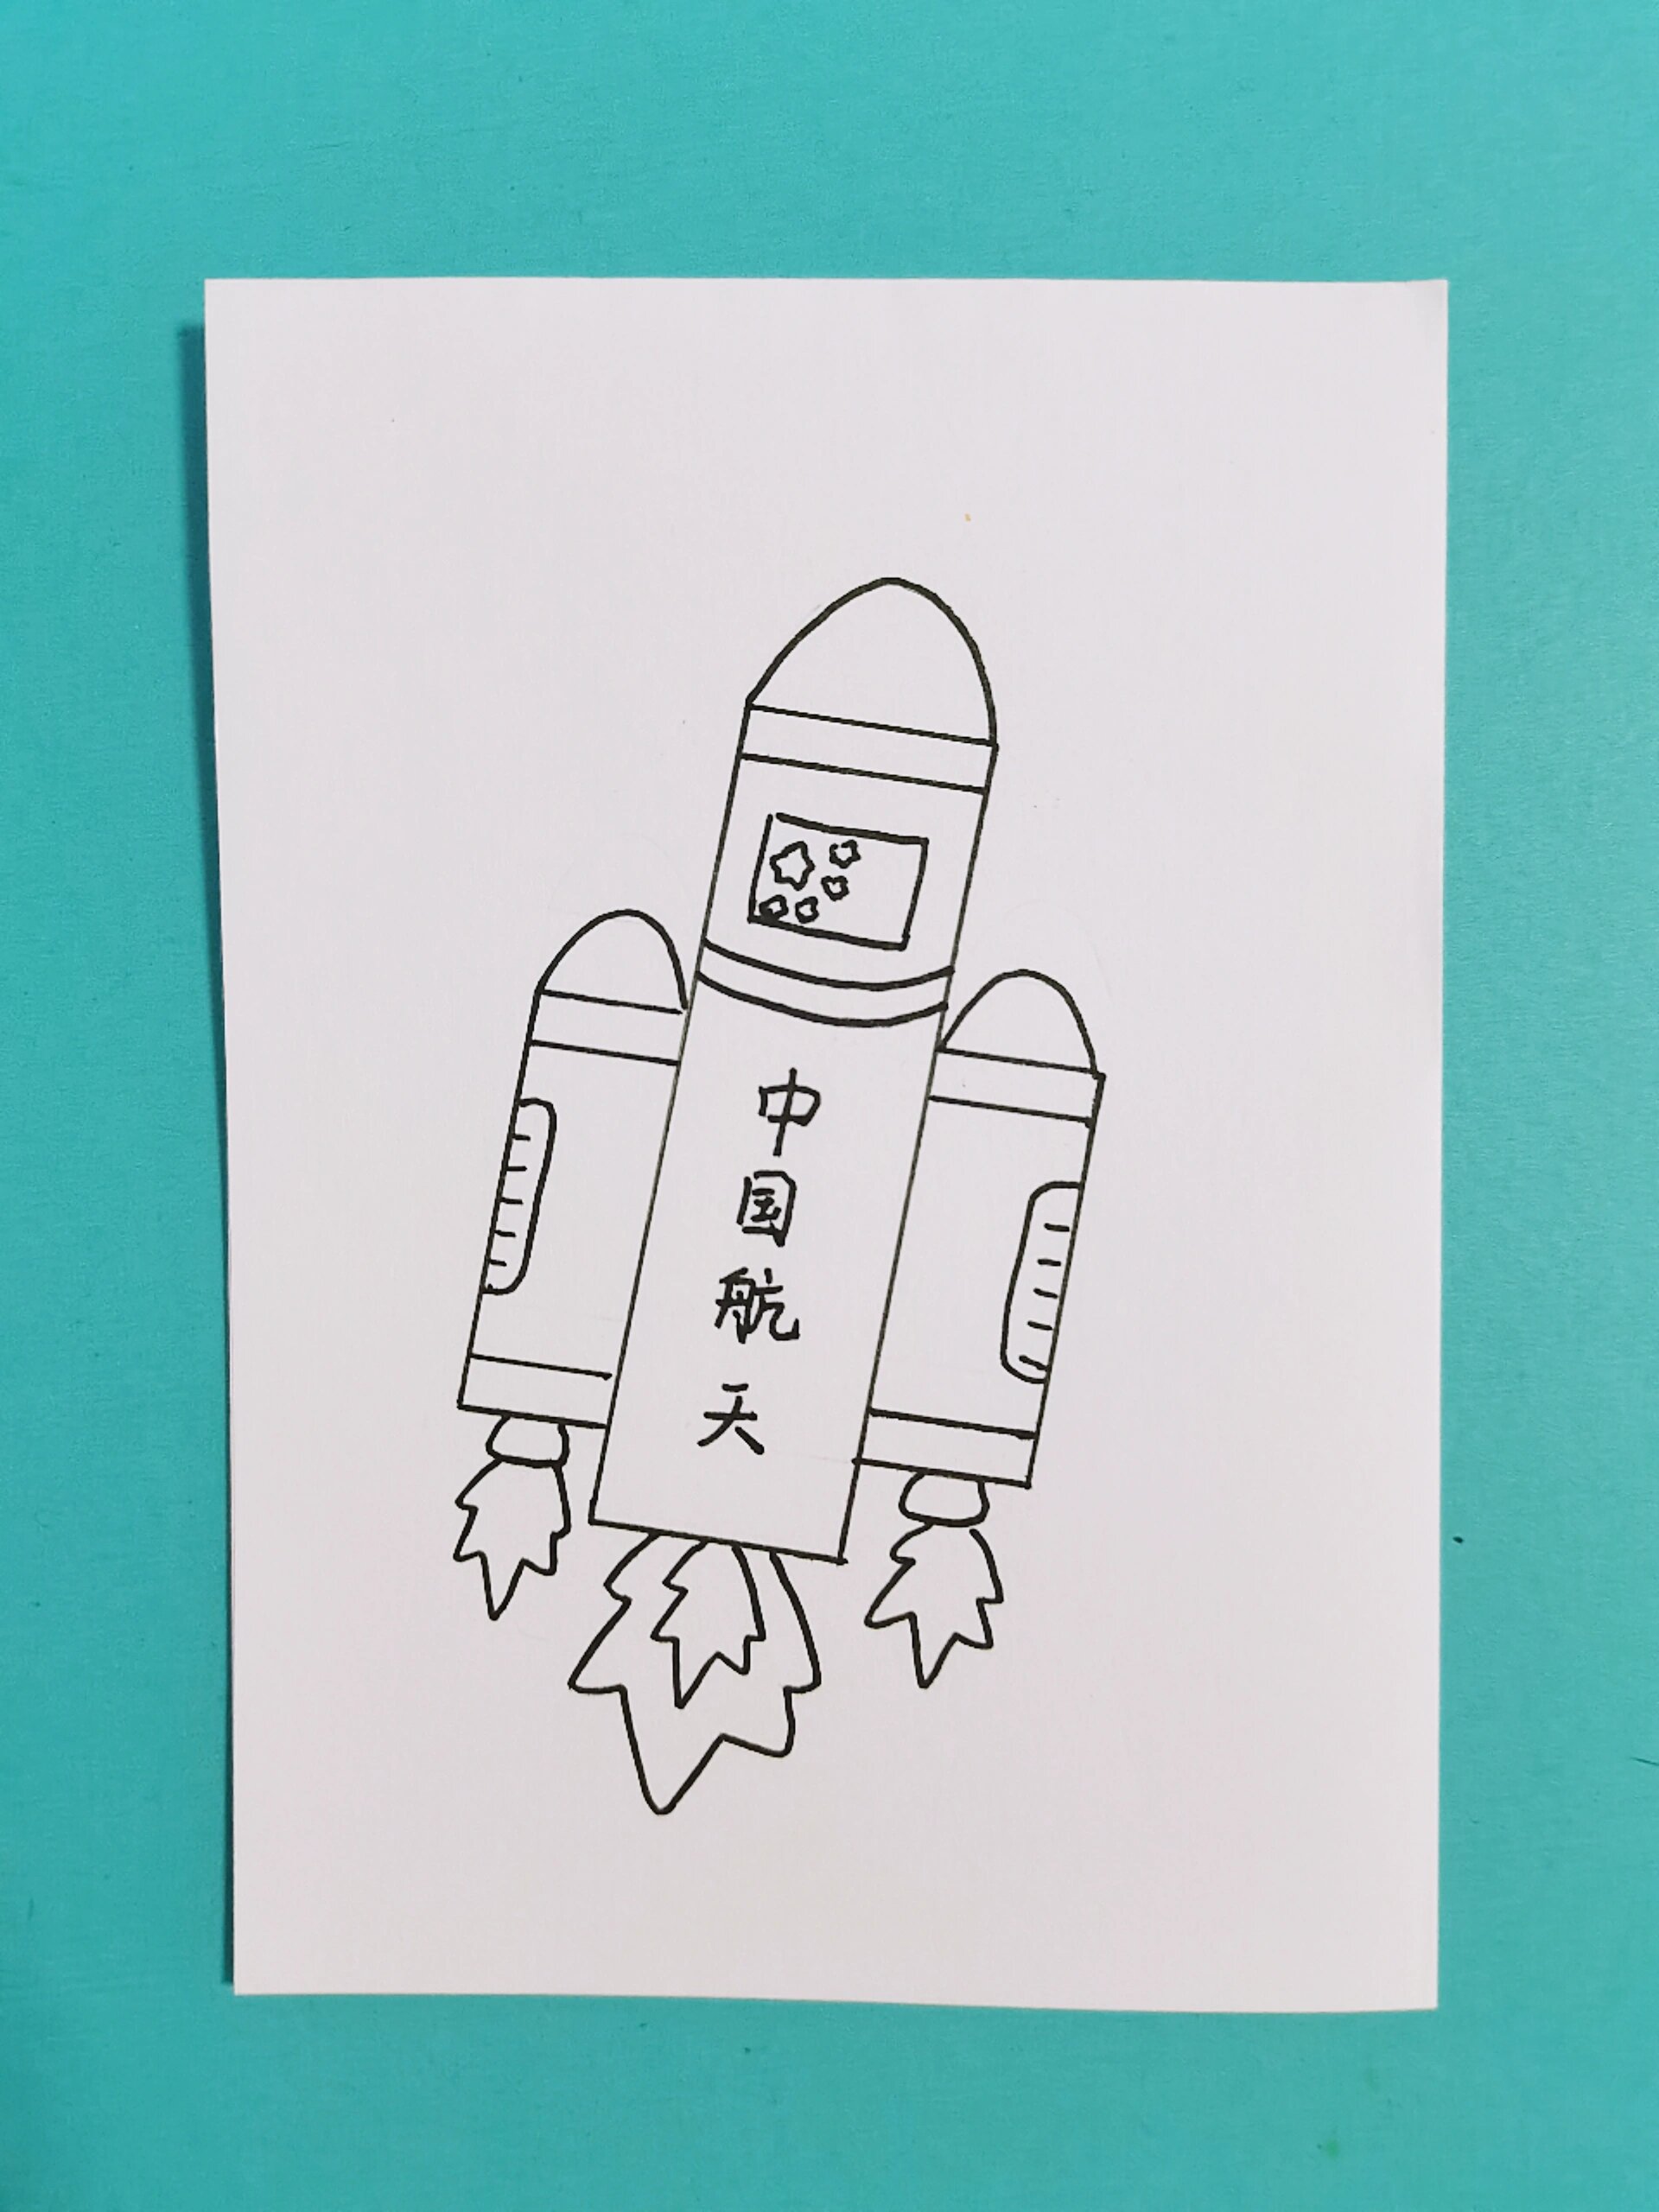 中国航天火箭04主题简笔画